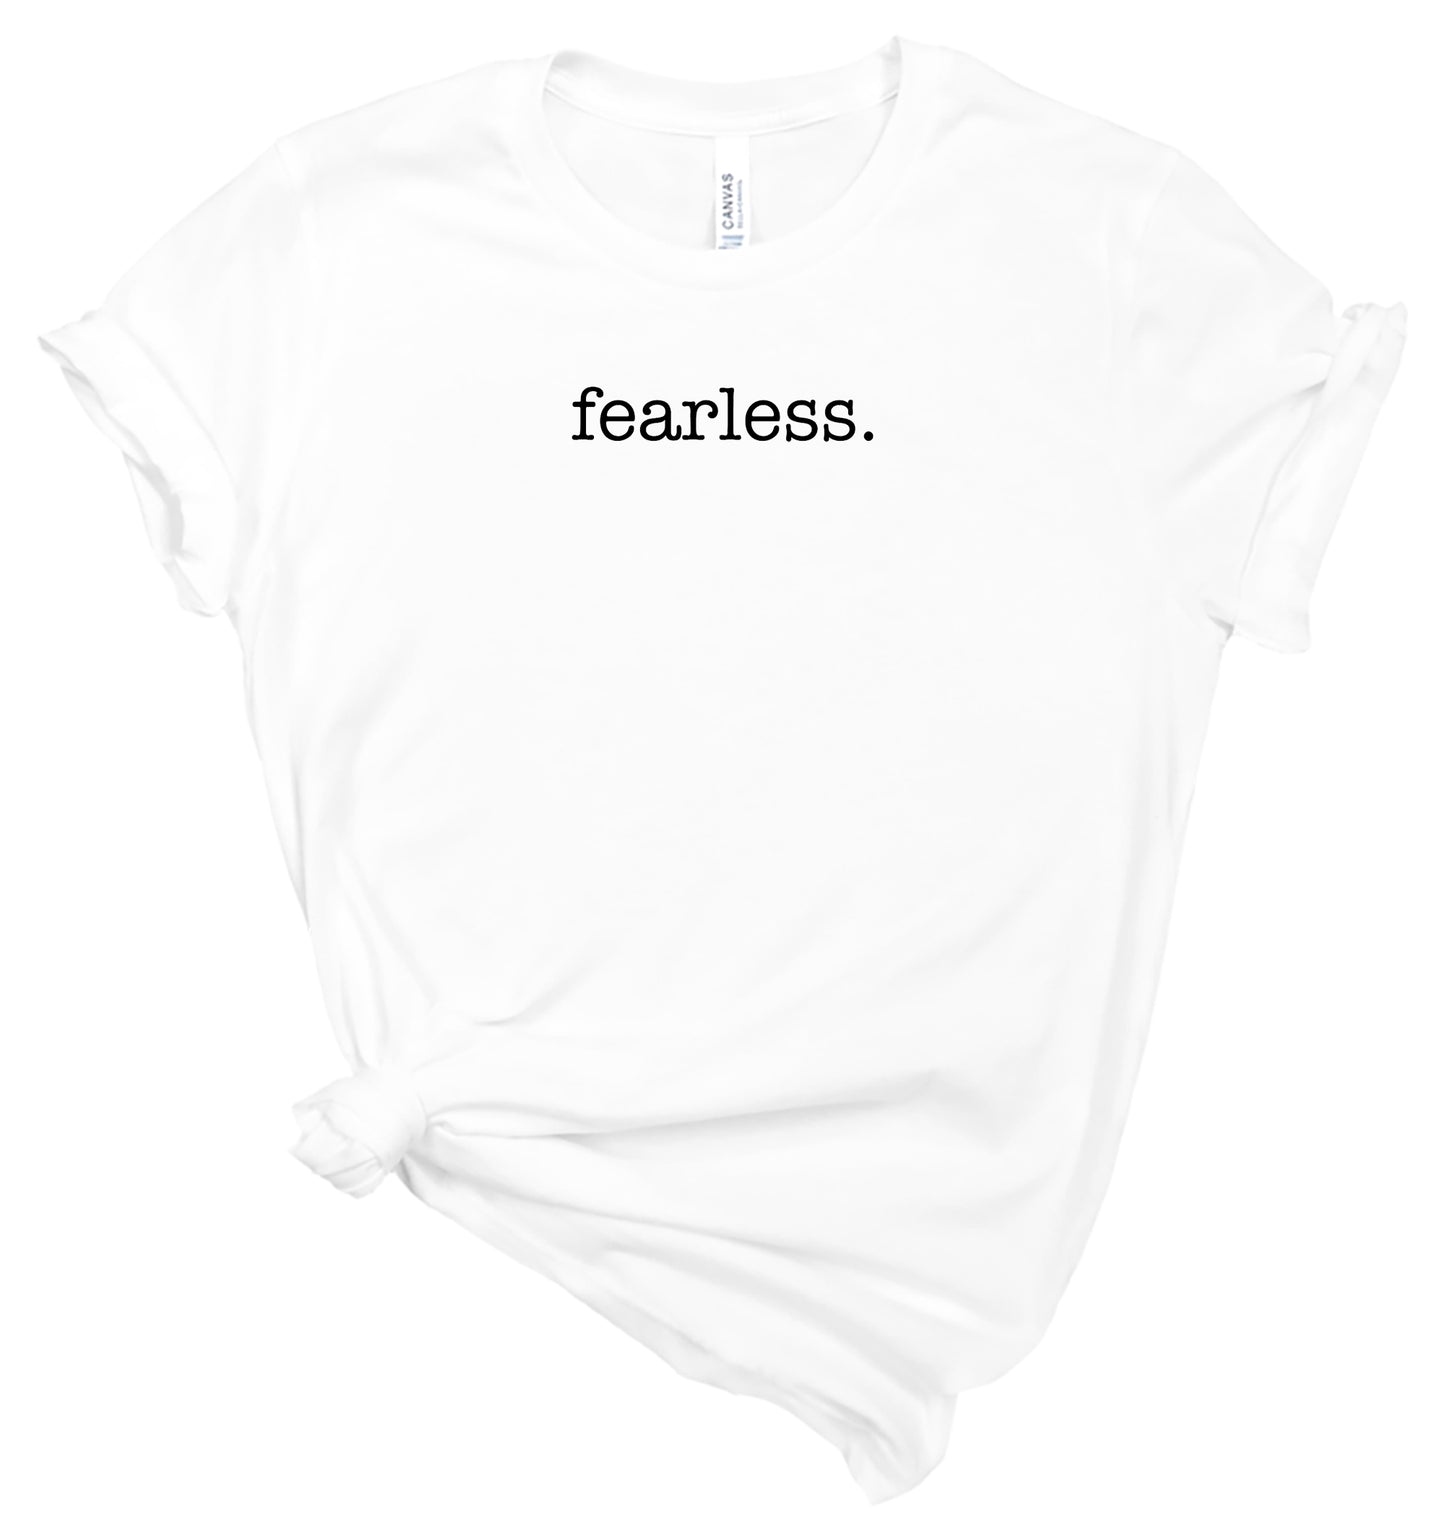 fearless - Affirmation Shirt - T-Shirt